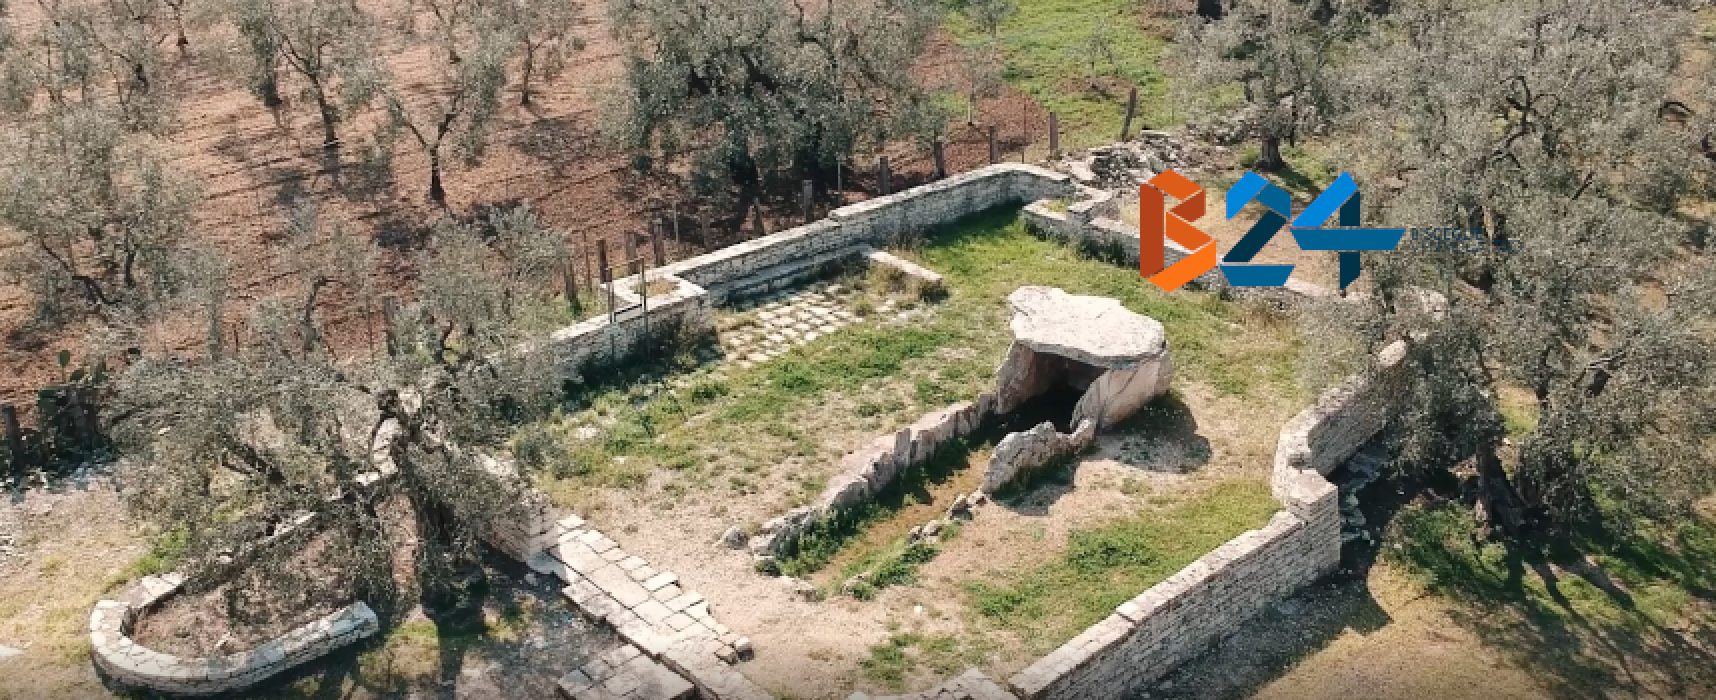 Fiera del Levante, Pro Loco Bisceglie presenta progetto “Tutela Dolmen e Lama Santa Croce”